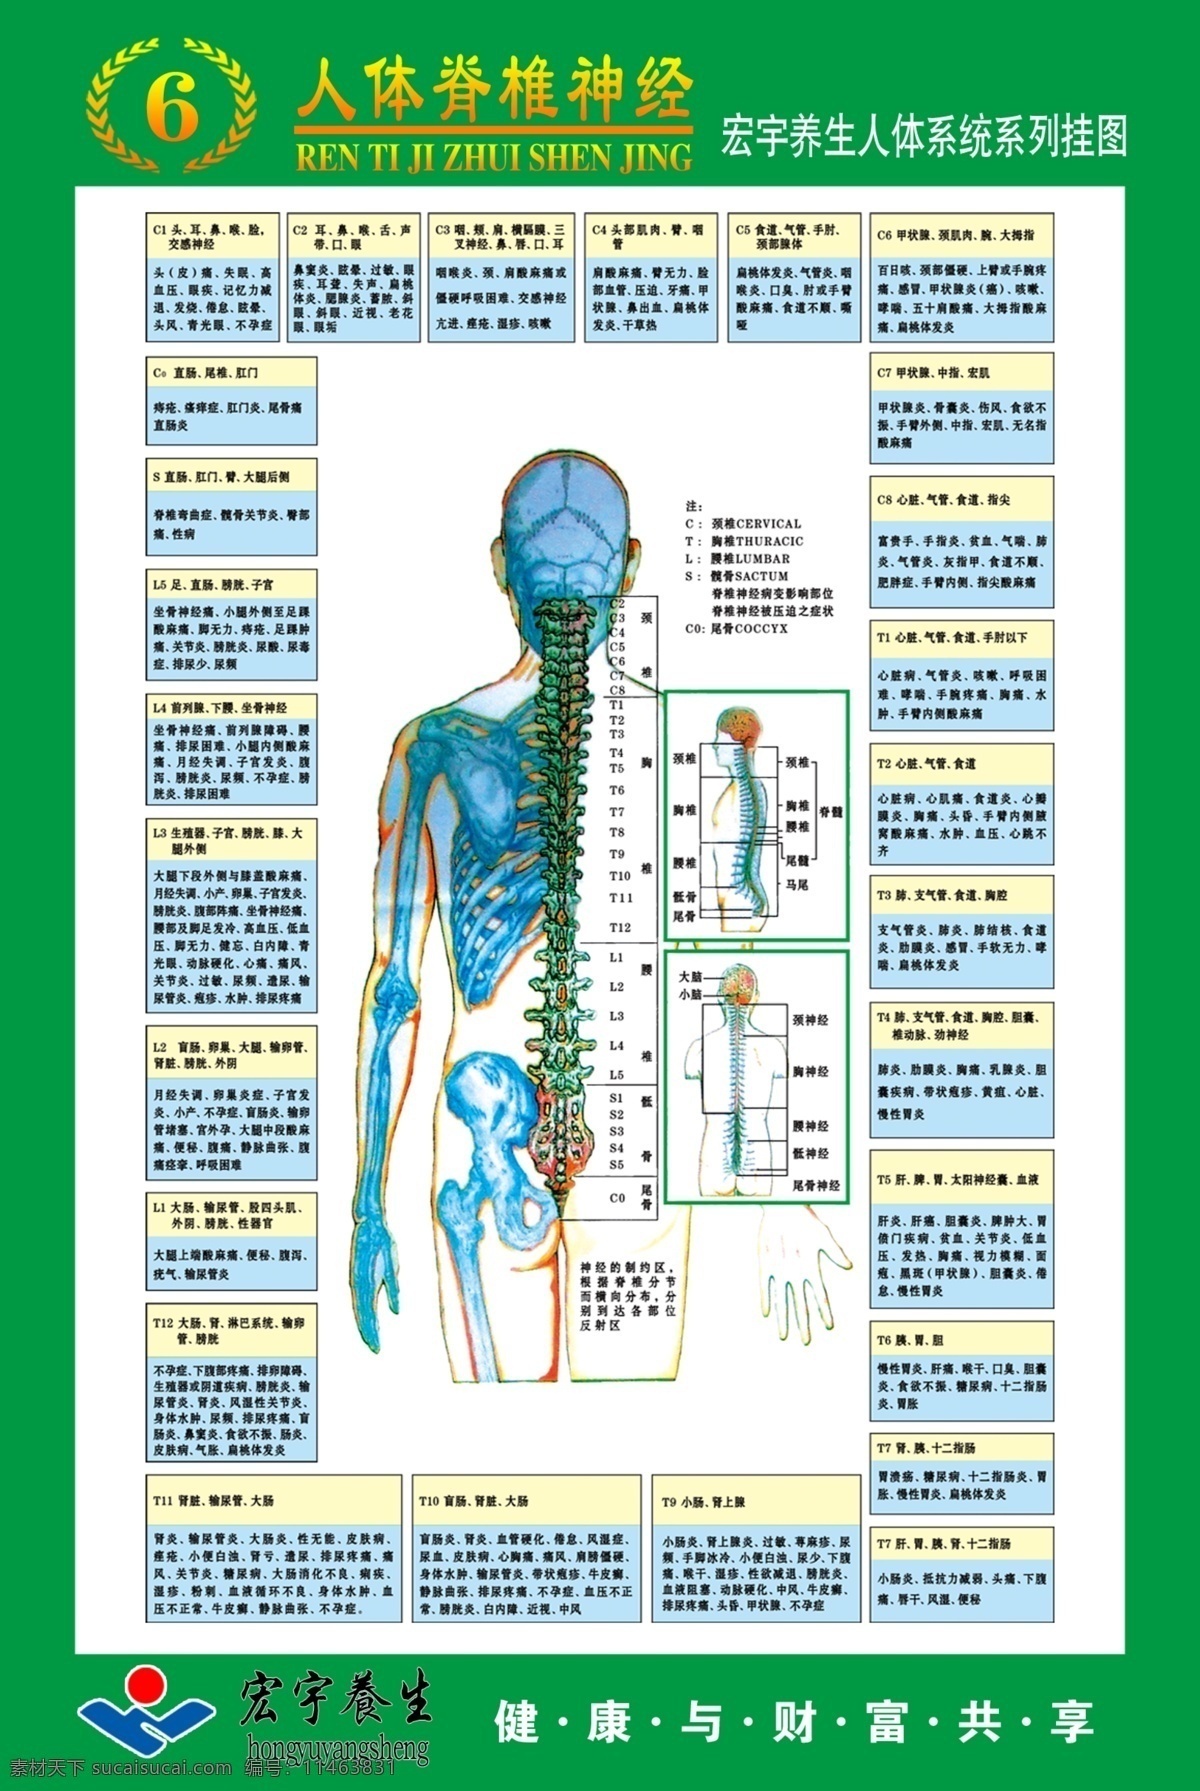 人体 系统 系列 图 脊椎 挂图 神经 展板模板 广告设计模板 源文件